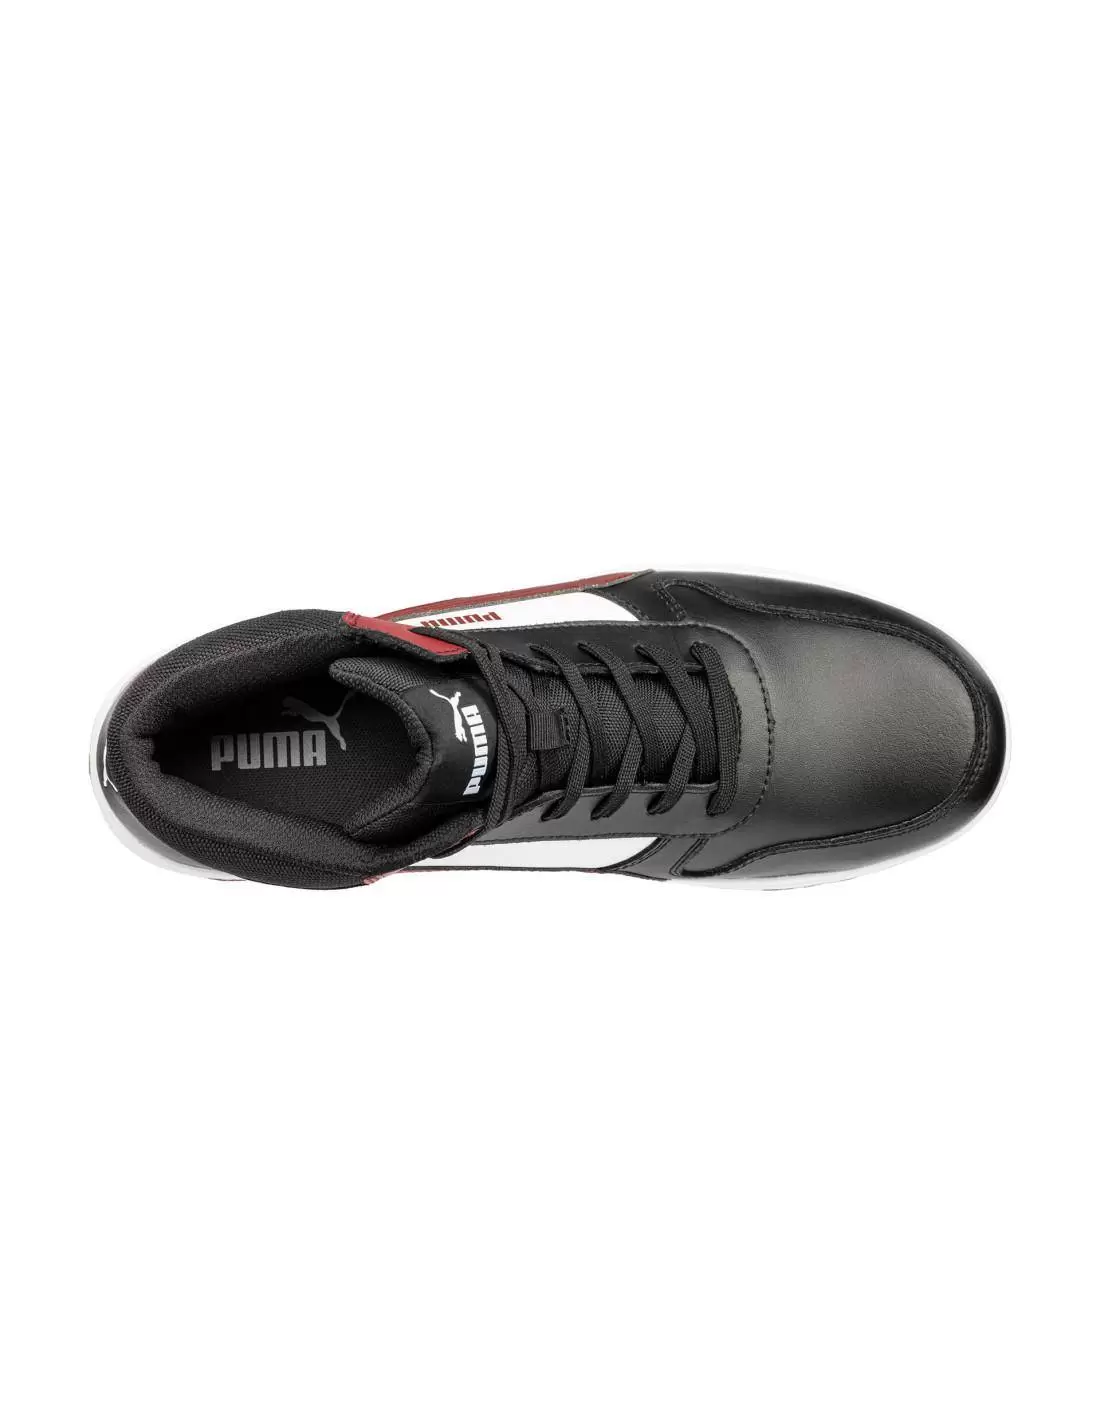 Chaussure de Sécurité Homme AIRTWIST Low S3 Noir/Rouge - PUMA SAFETY